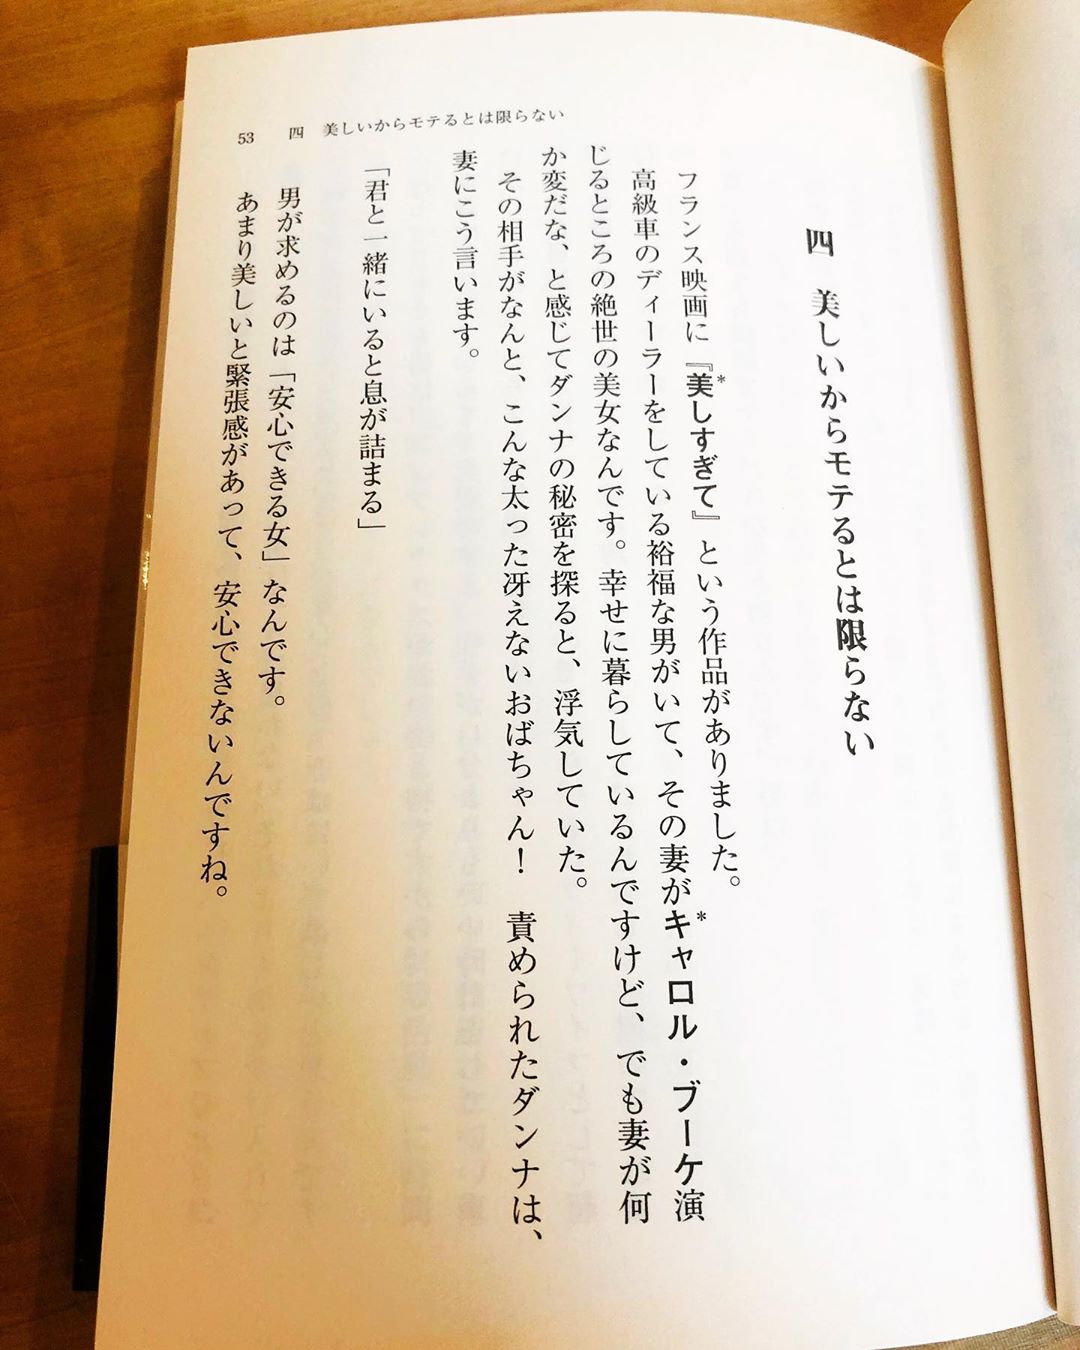 ダレノガレ明美 昨日ストーリーに載せた本は 美女の正体 って本です すごく面白いので読んでみてください すごく勉強になる本です まわりが思うほど美女は幸せではない Wacoca Japan People Life Style